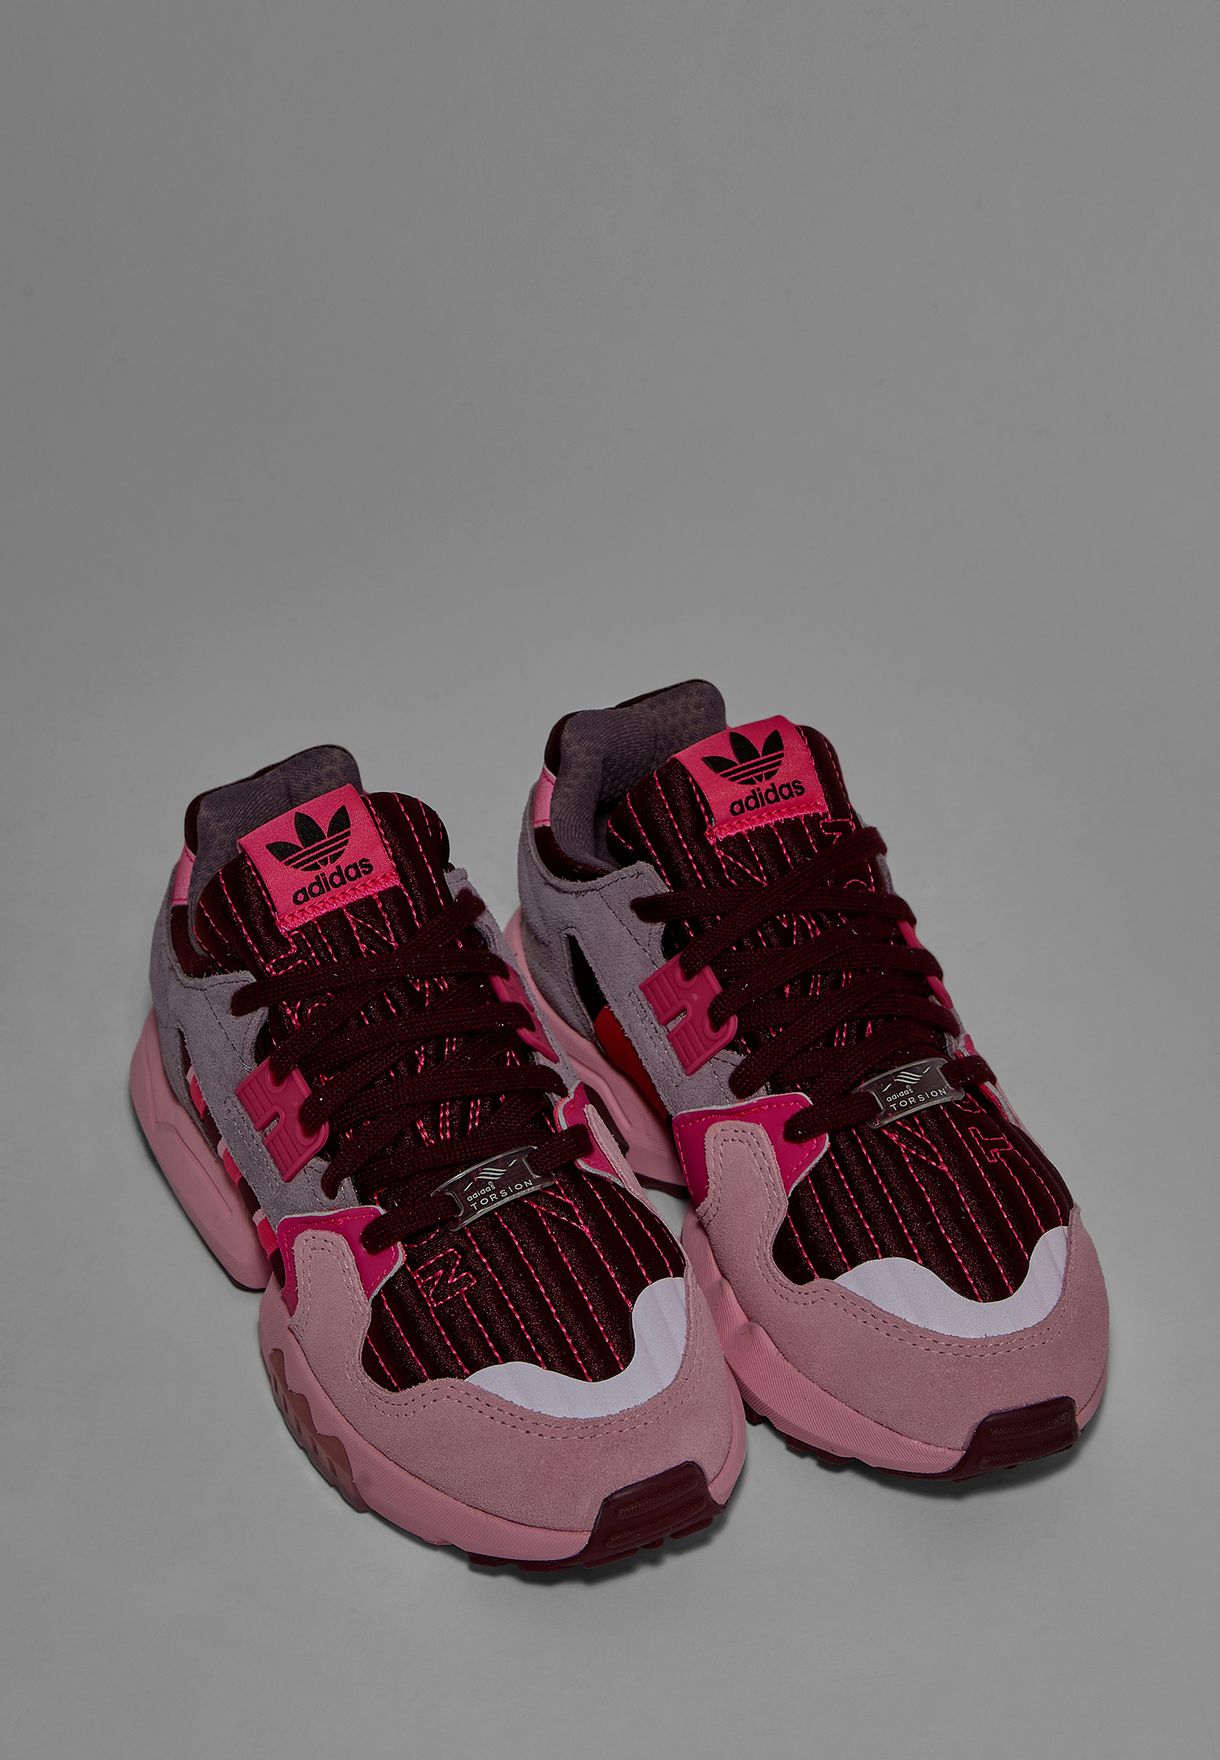 adidas zx torsion w pink